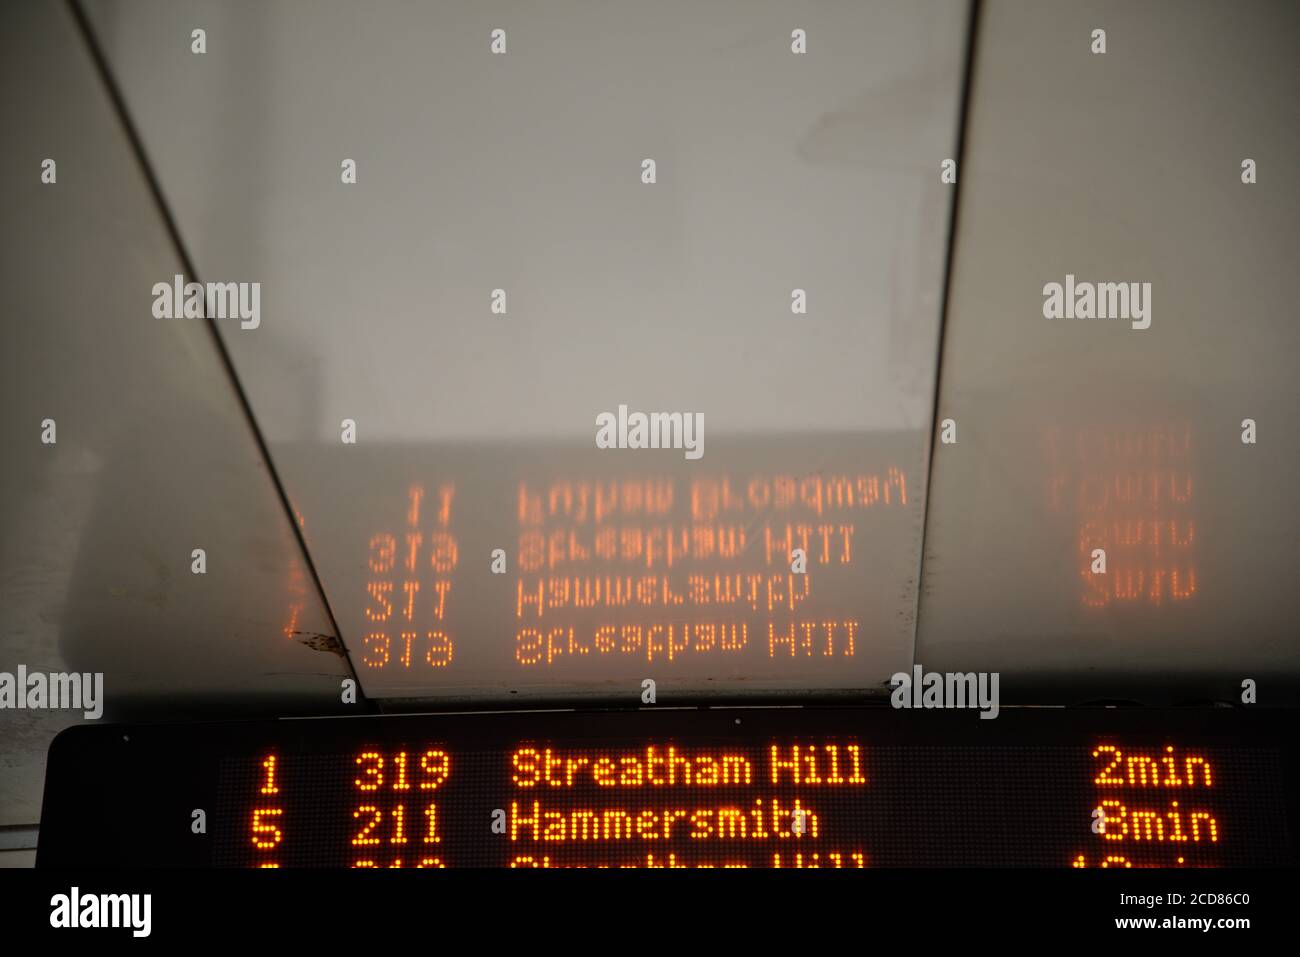 Image abstraite de la réflexion sur le plafond d'un abri d'autobus à Londres. Affichage des heures d'arrivée du bus. Espace pour le texte. Banque D'Images